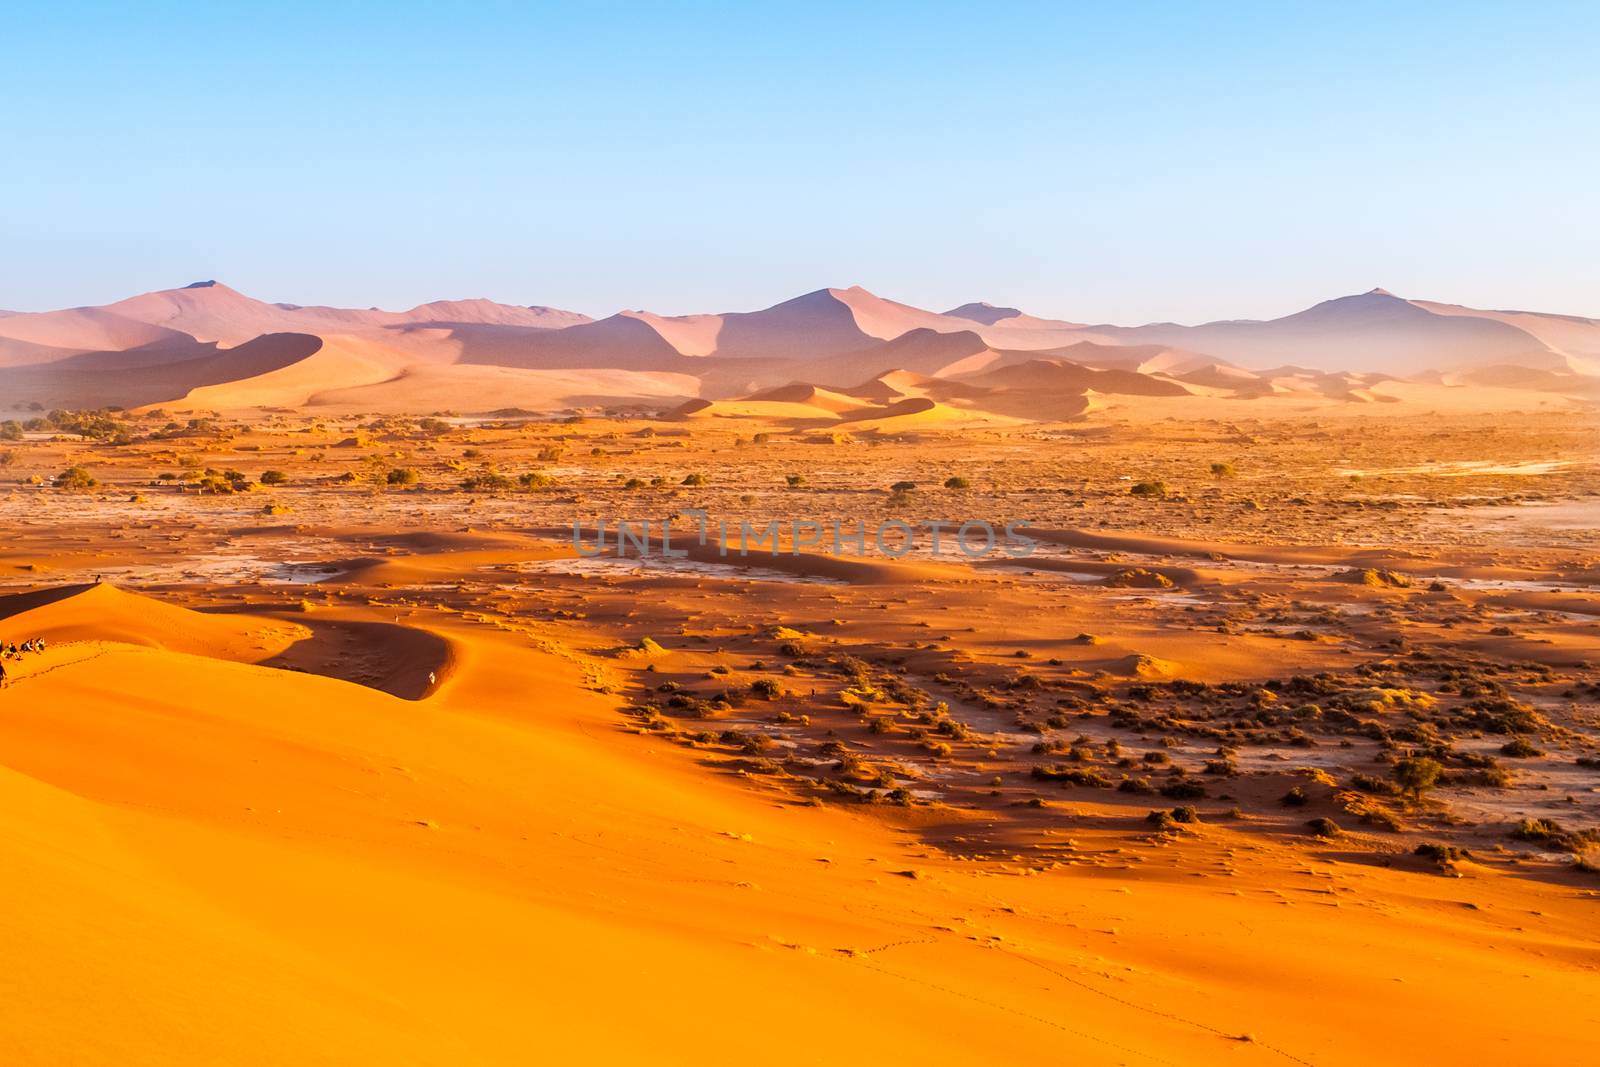 Red dunes of Namib Desert near Sossusvlei, aka Sossus Vlei, Namibia, Africa by pyty